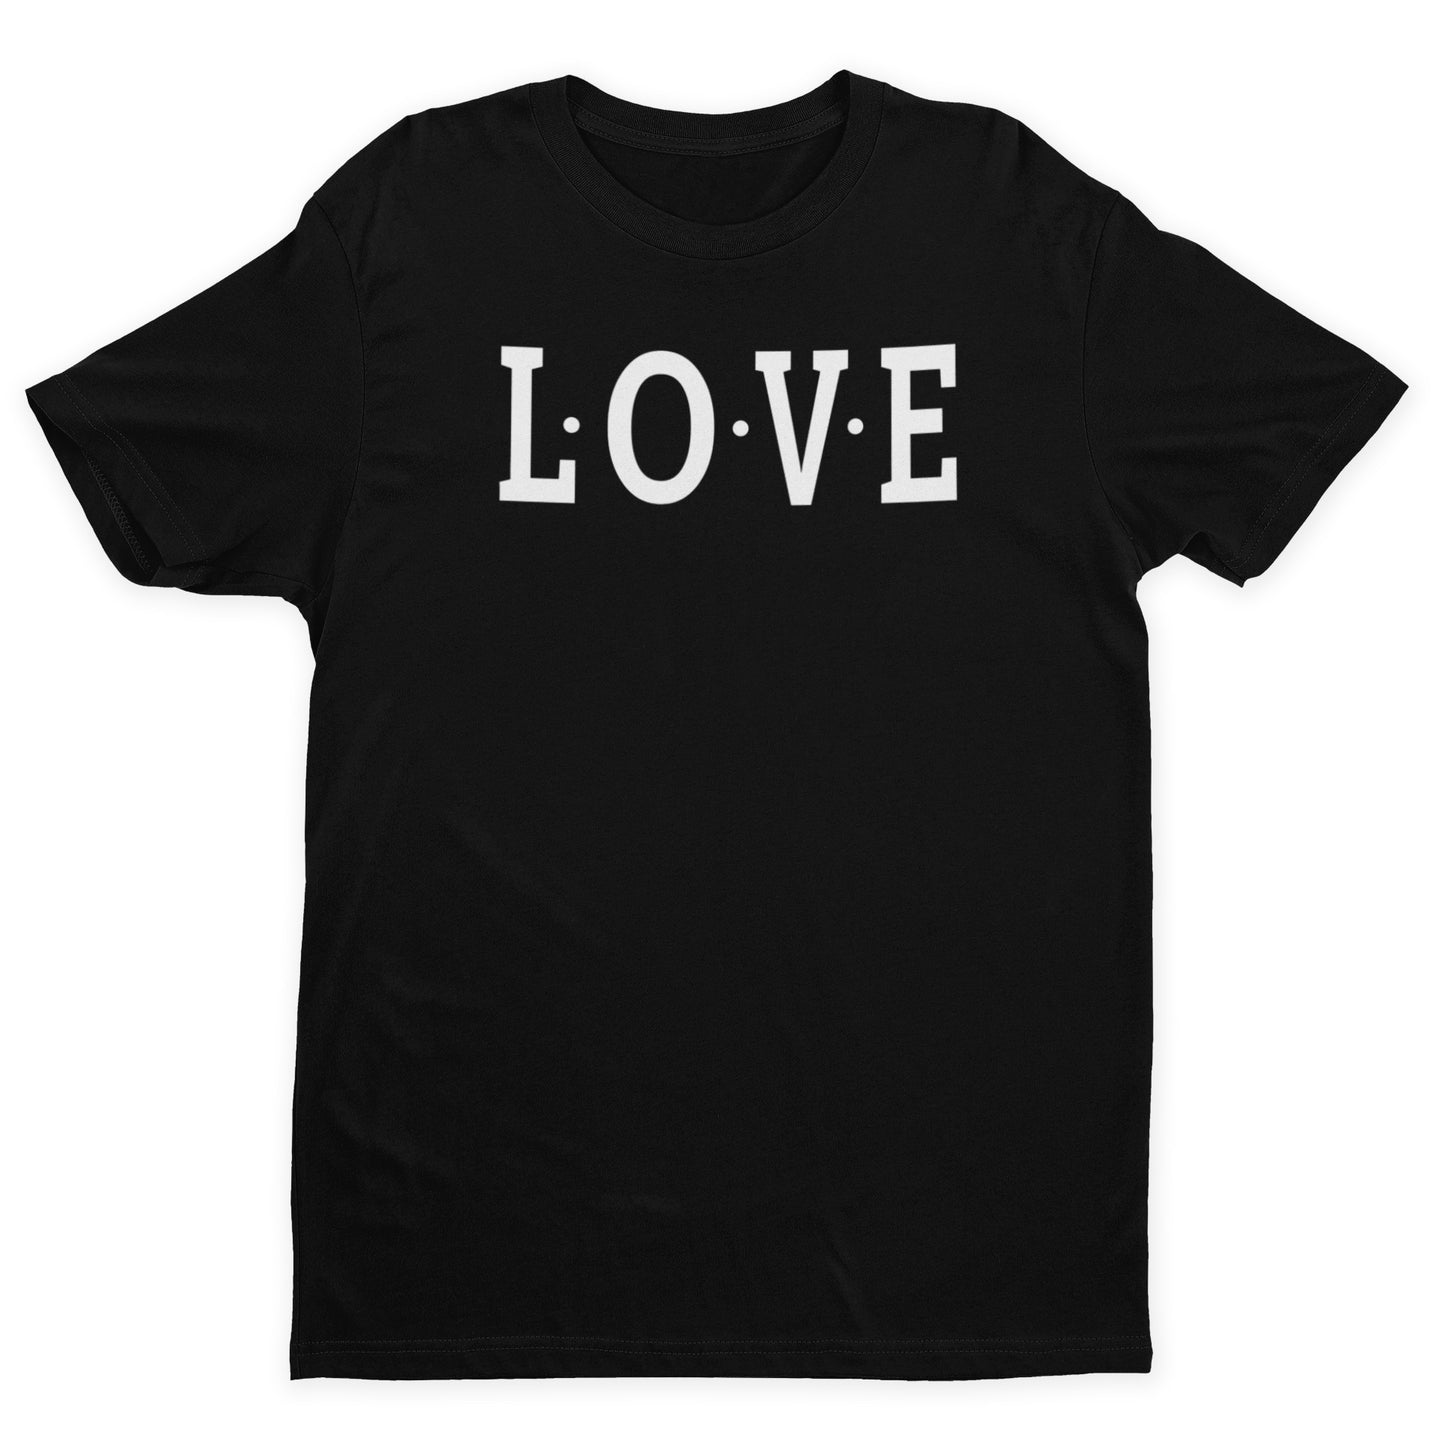 L-O-V-E T-Shirt - Black / White